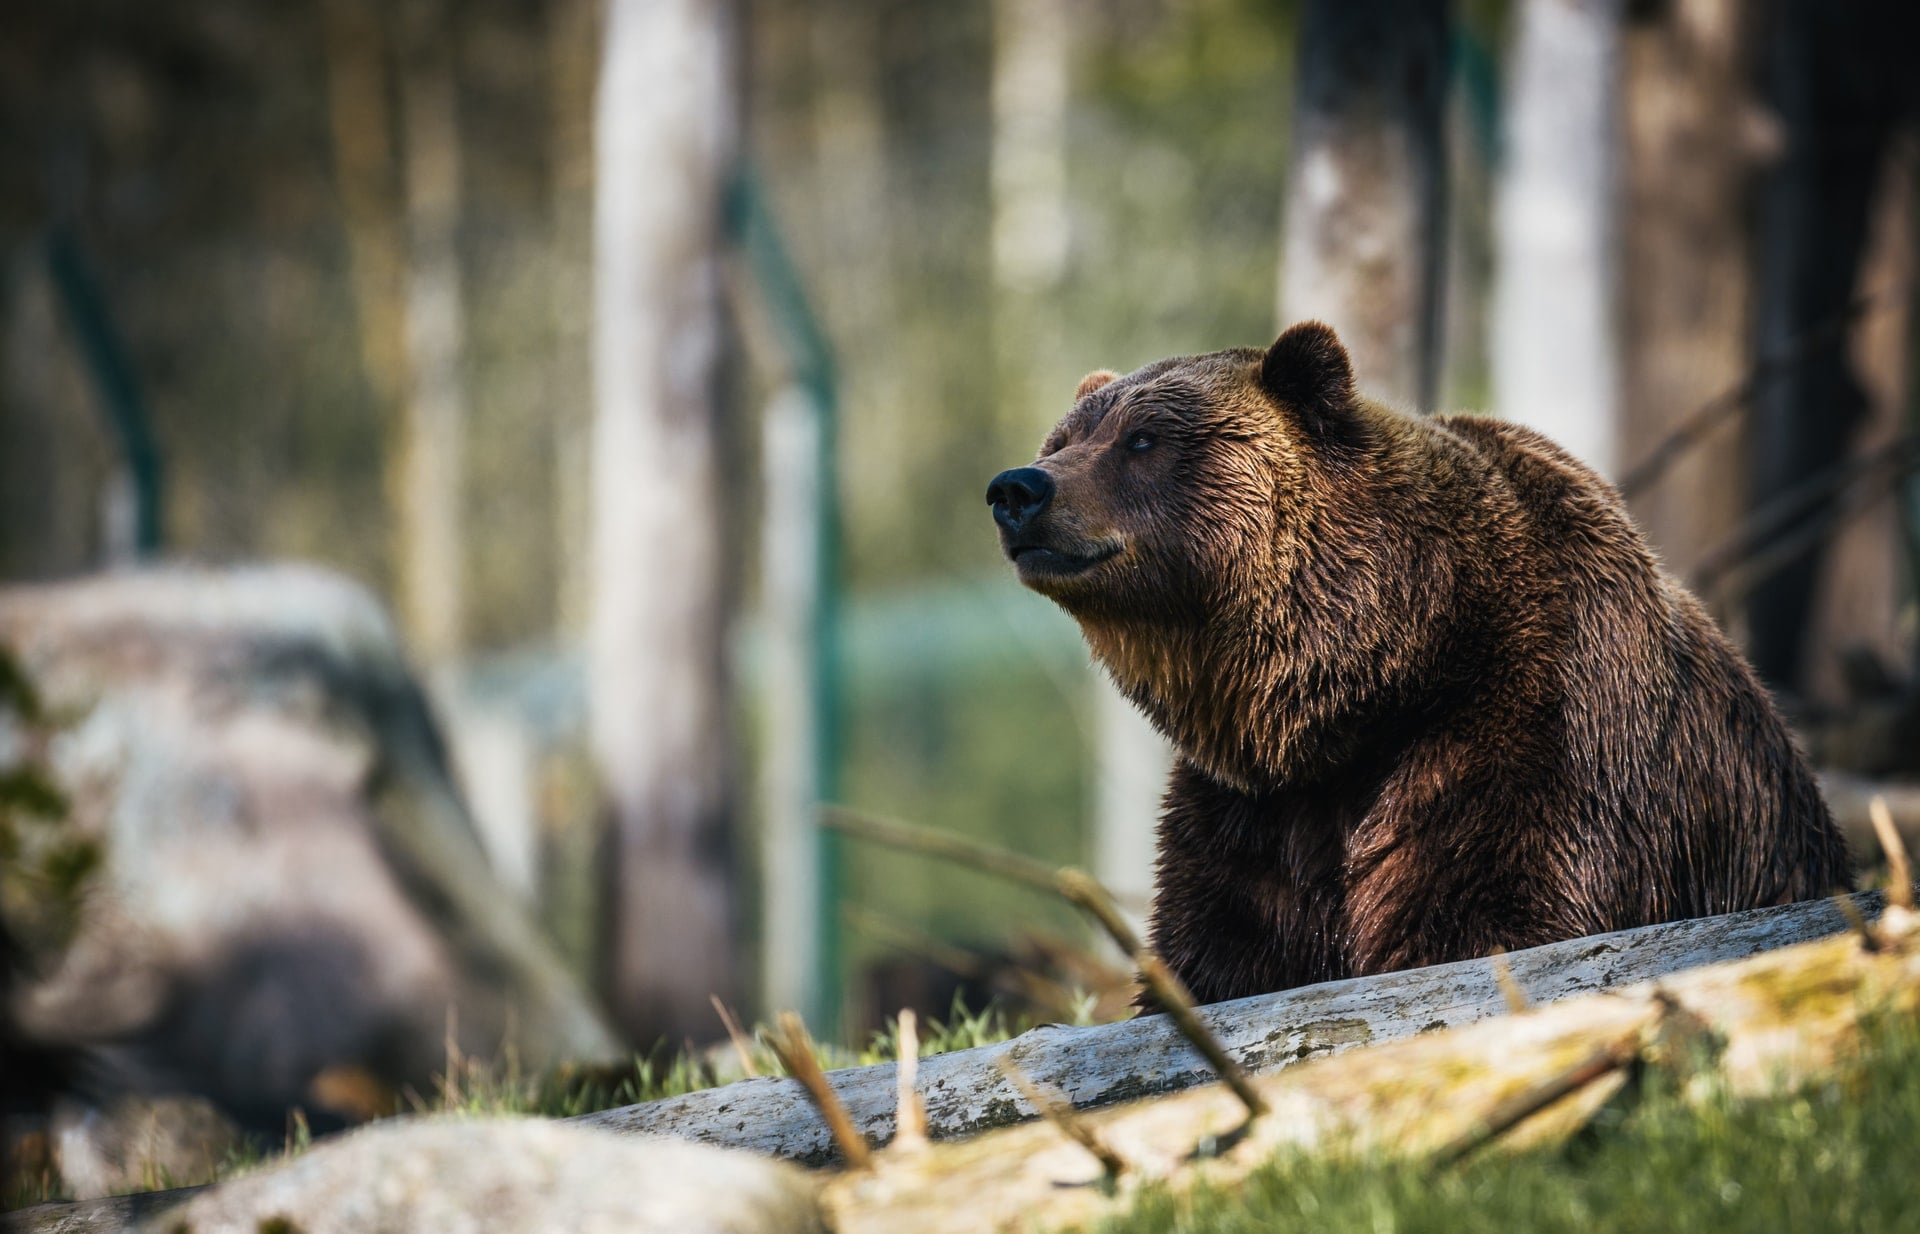 Природа, Томские новости, медведь охота рыбака природа заболевание районы инфекция сезон охоты Охоту запретили в трех районах Томской области из-за выявленного у медведей заболевания